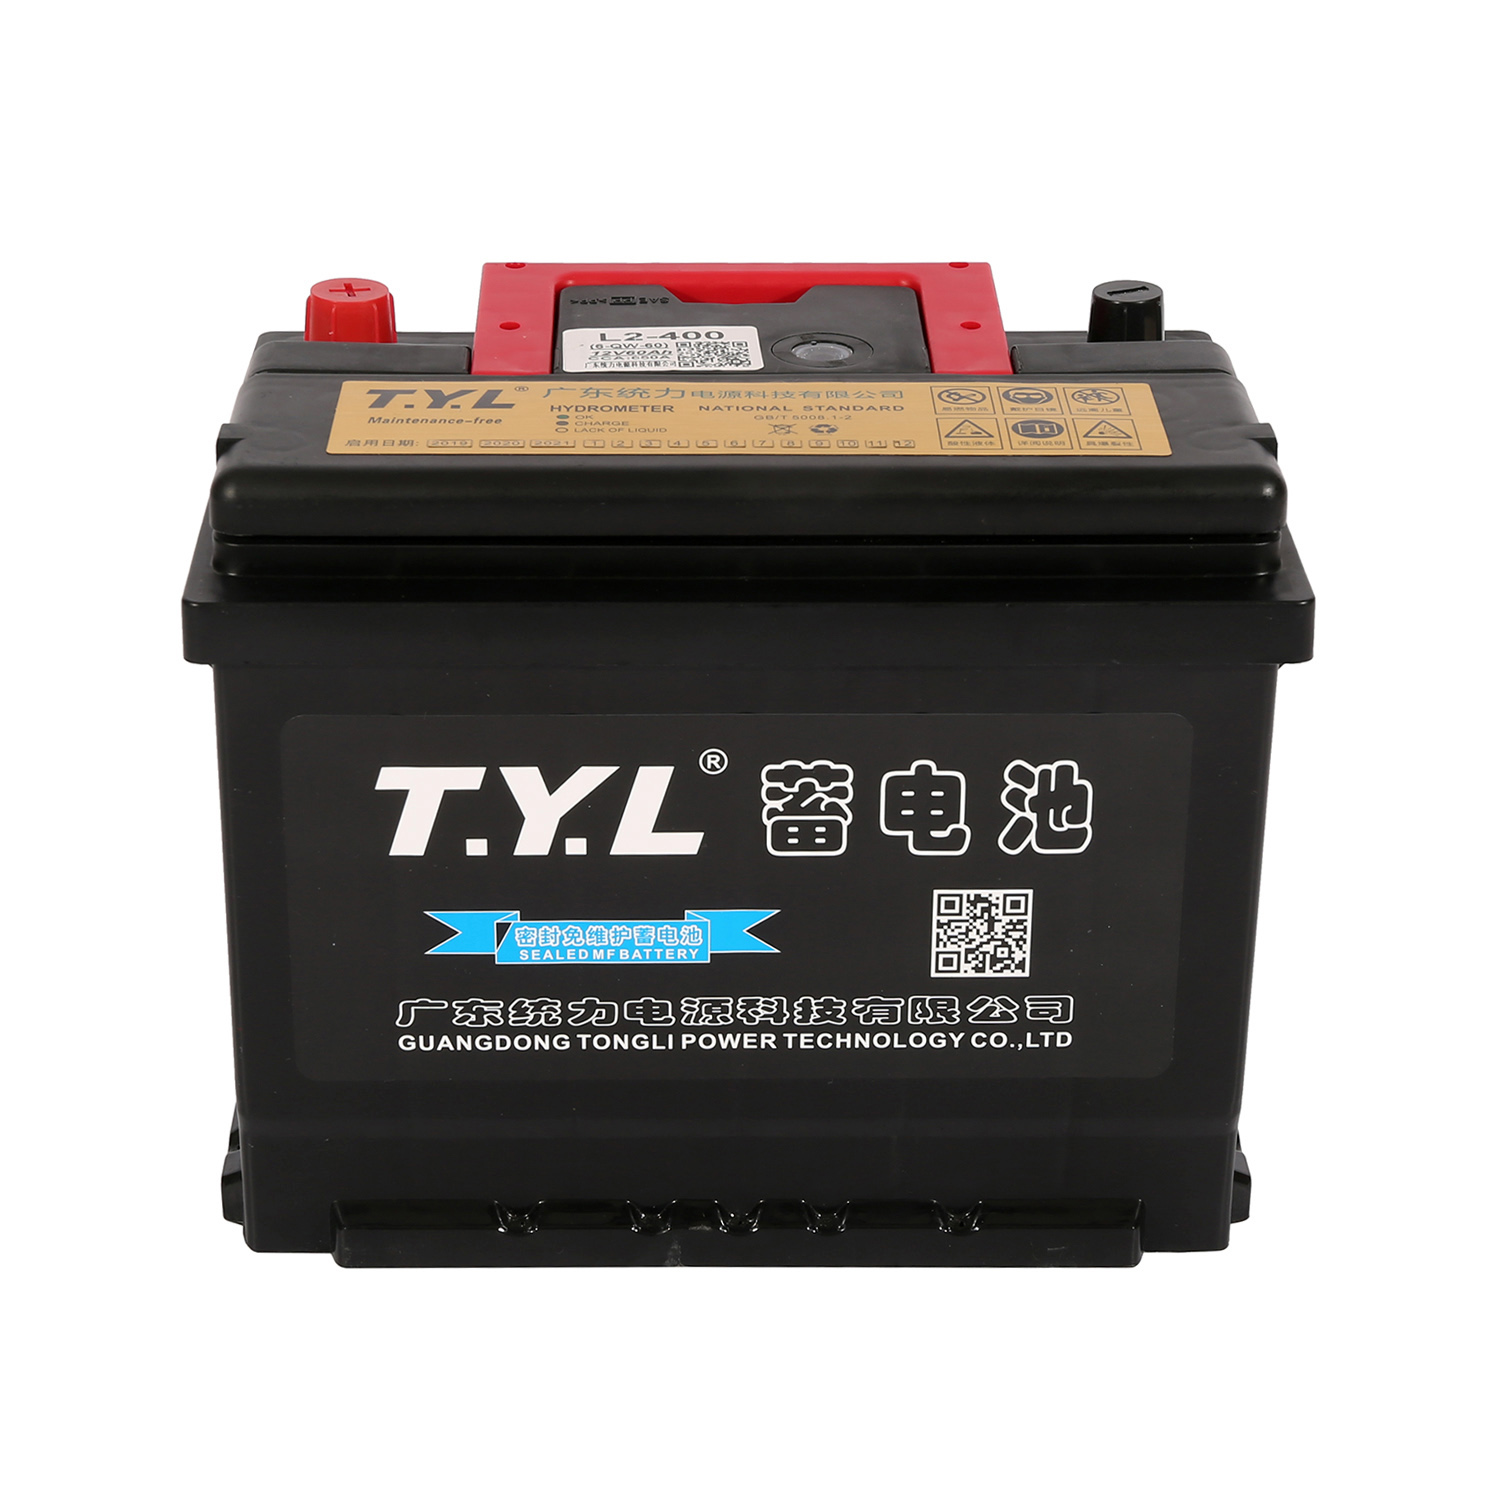 Produsent høykvalitets batteri for Kina bilbatteri 12v75ah smf 75D31L